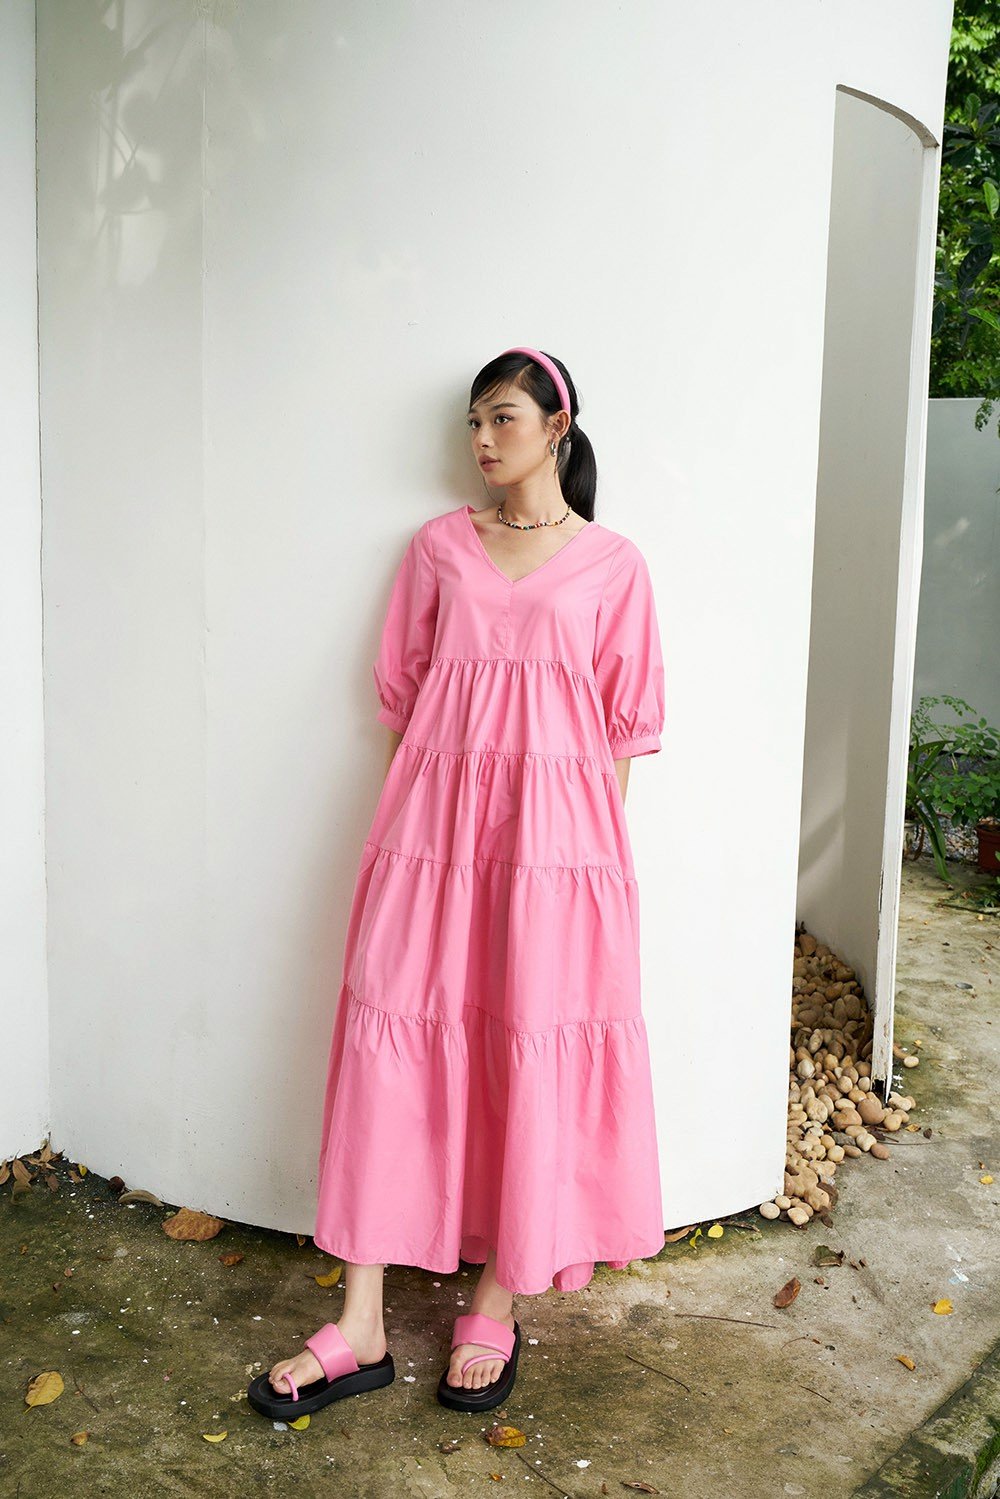 Chỉ có thể là ngọc nữ Hà Tăng: Body đẹp xuất sắc nhưng chỉ thích duy nhất 1 kiểu váy thùng thình, giấu dáng - Ảnh 10.